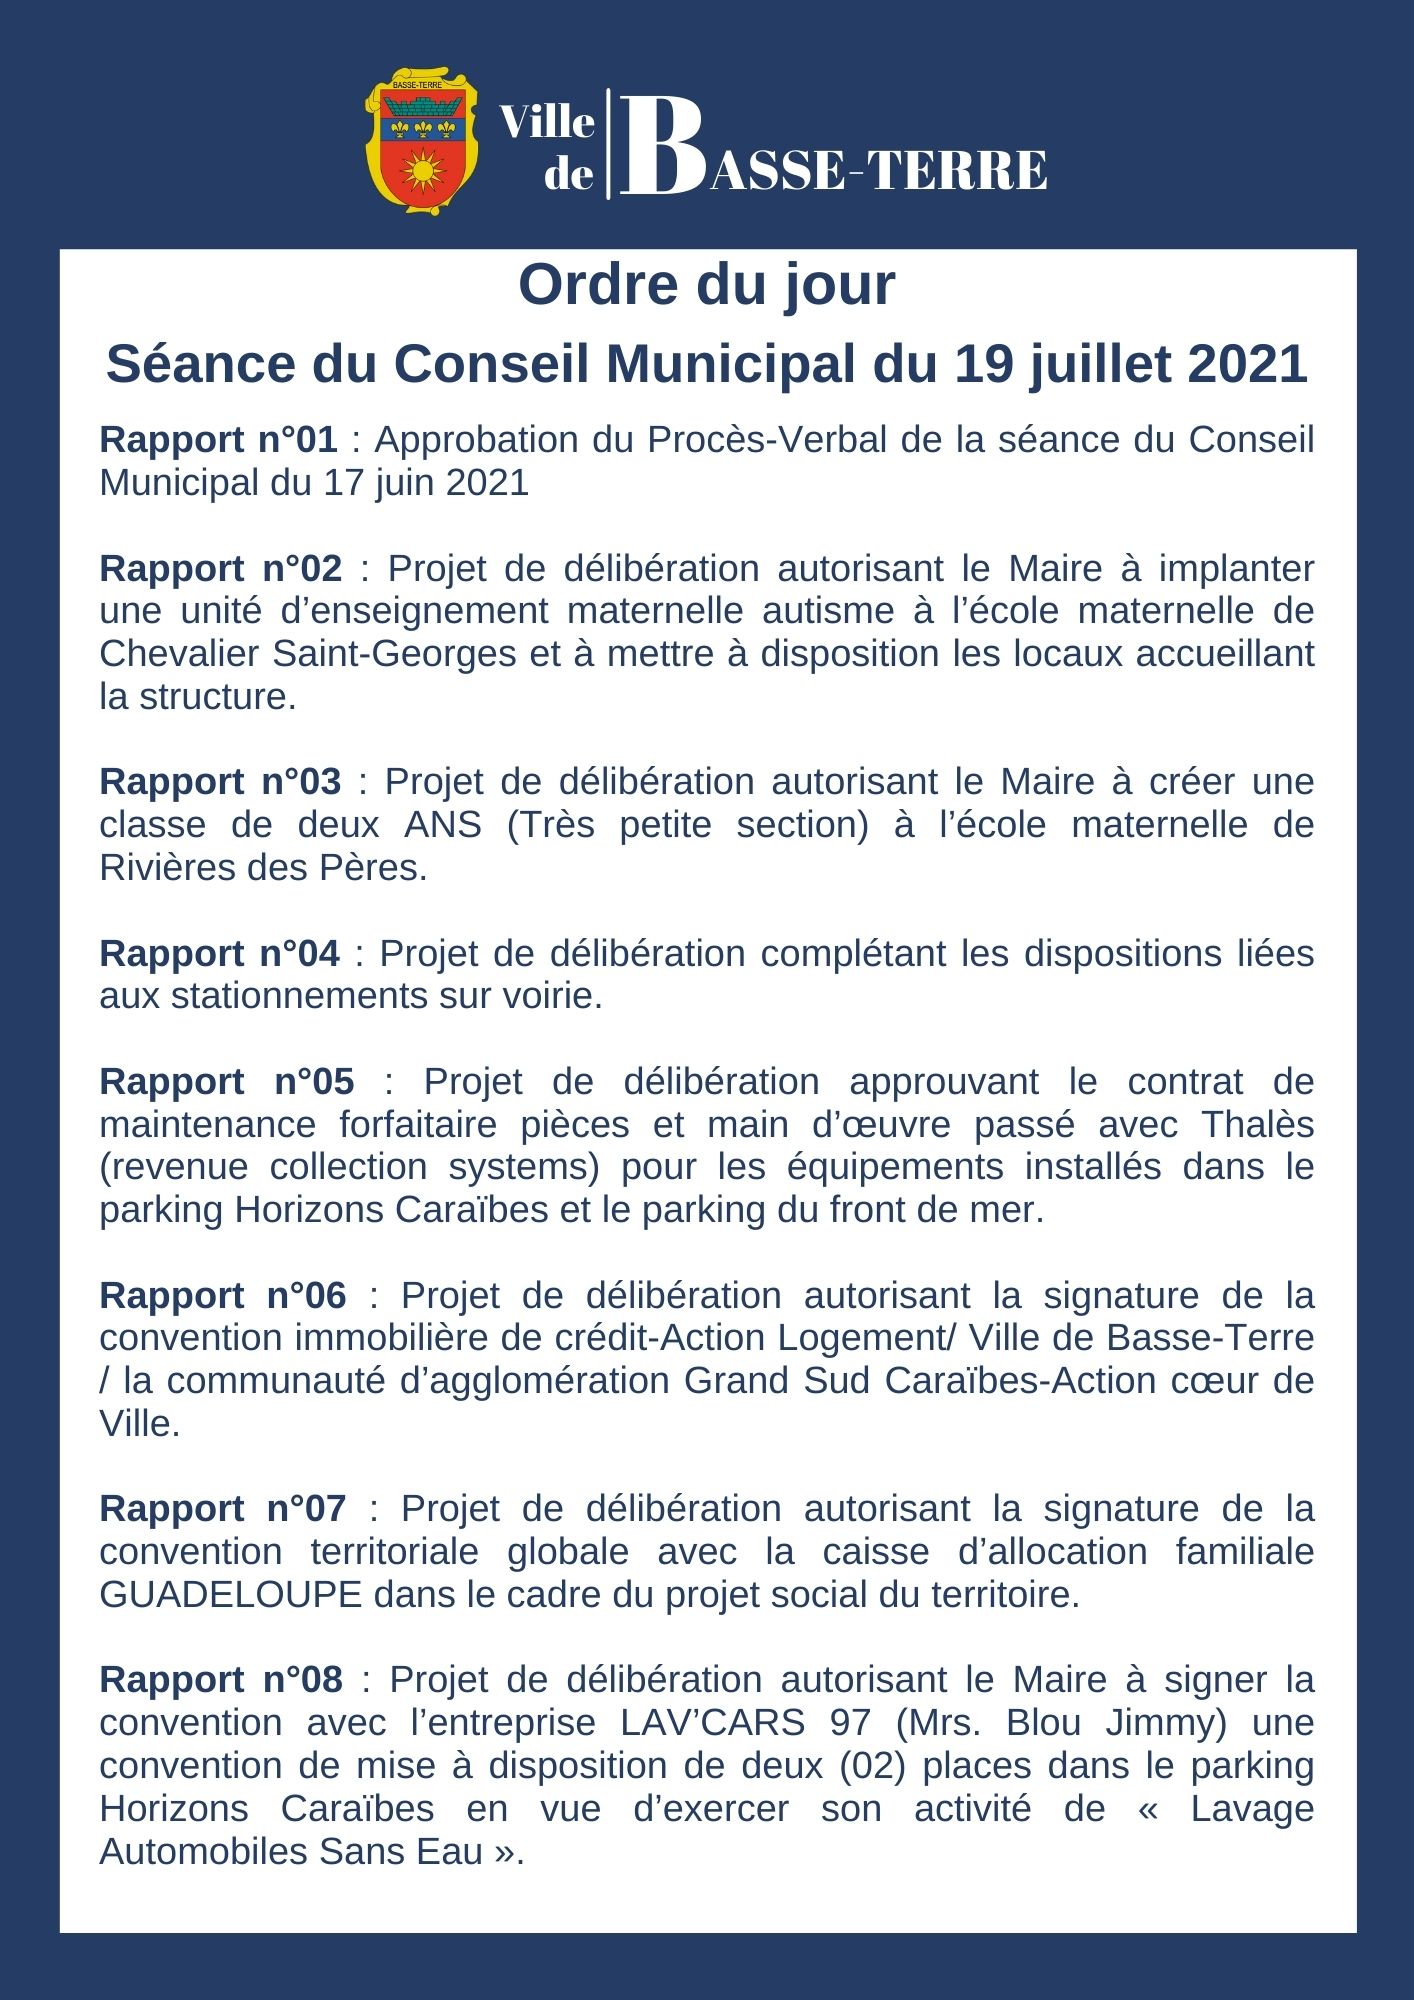 Ordre du jour du Conseil Municipal du lundi 19 juillet 2021